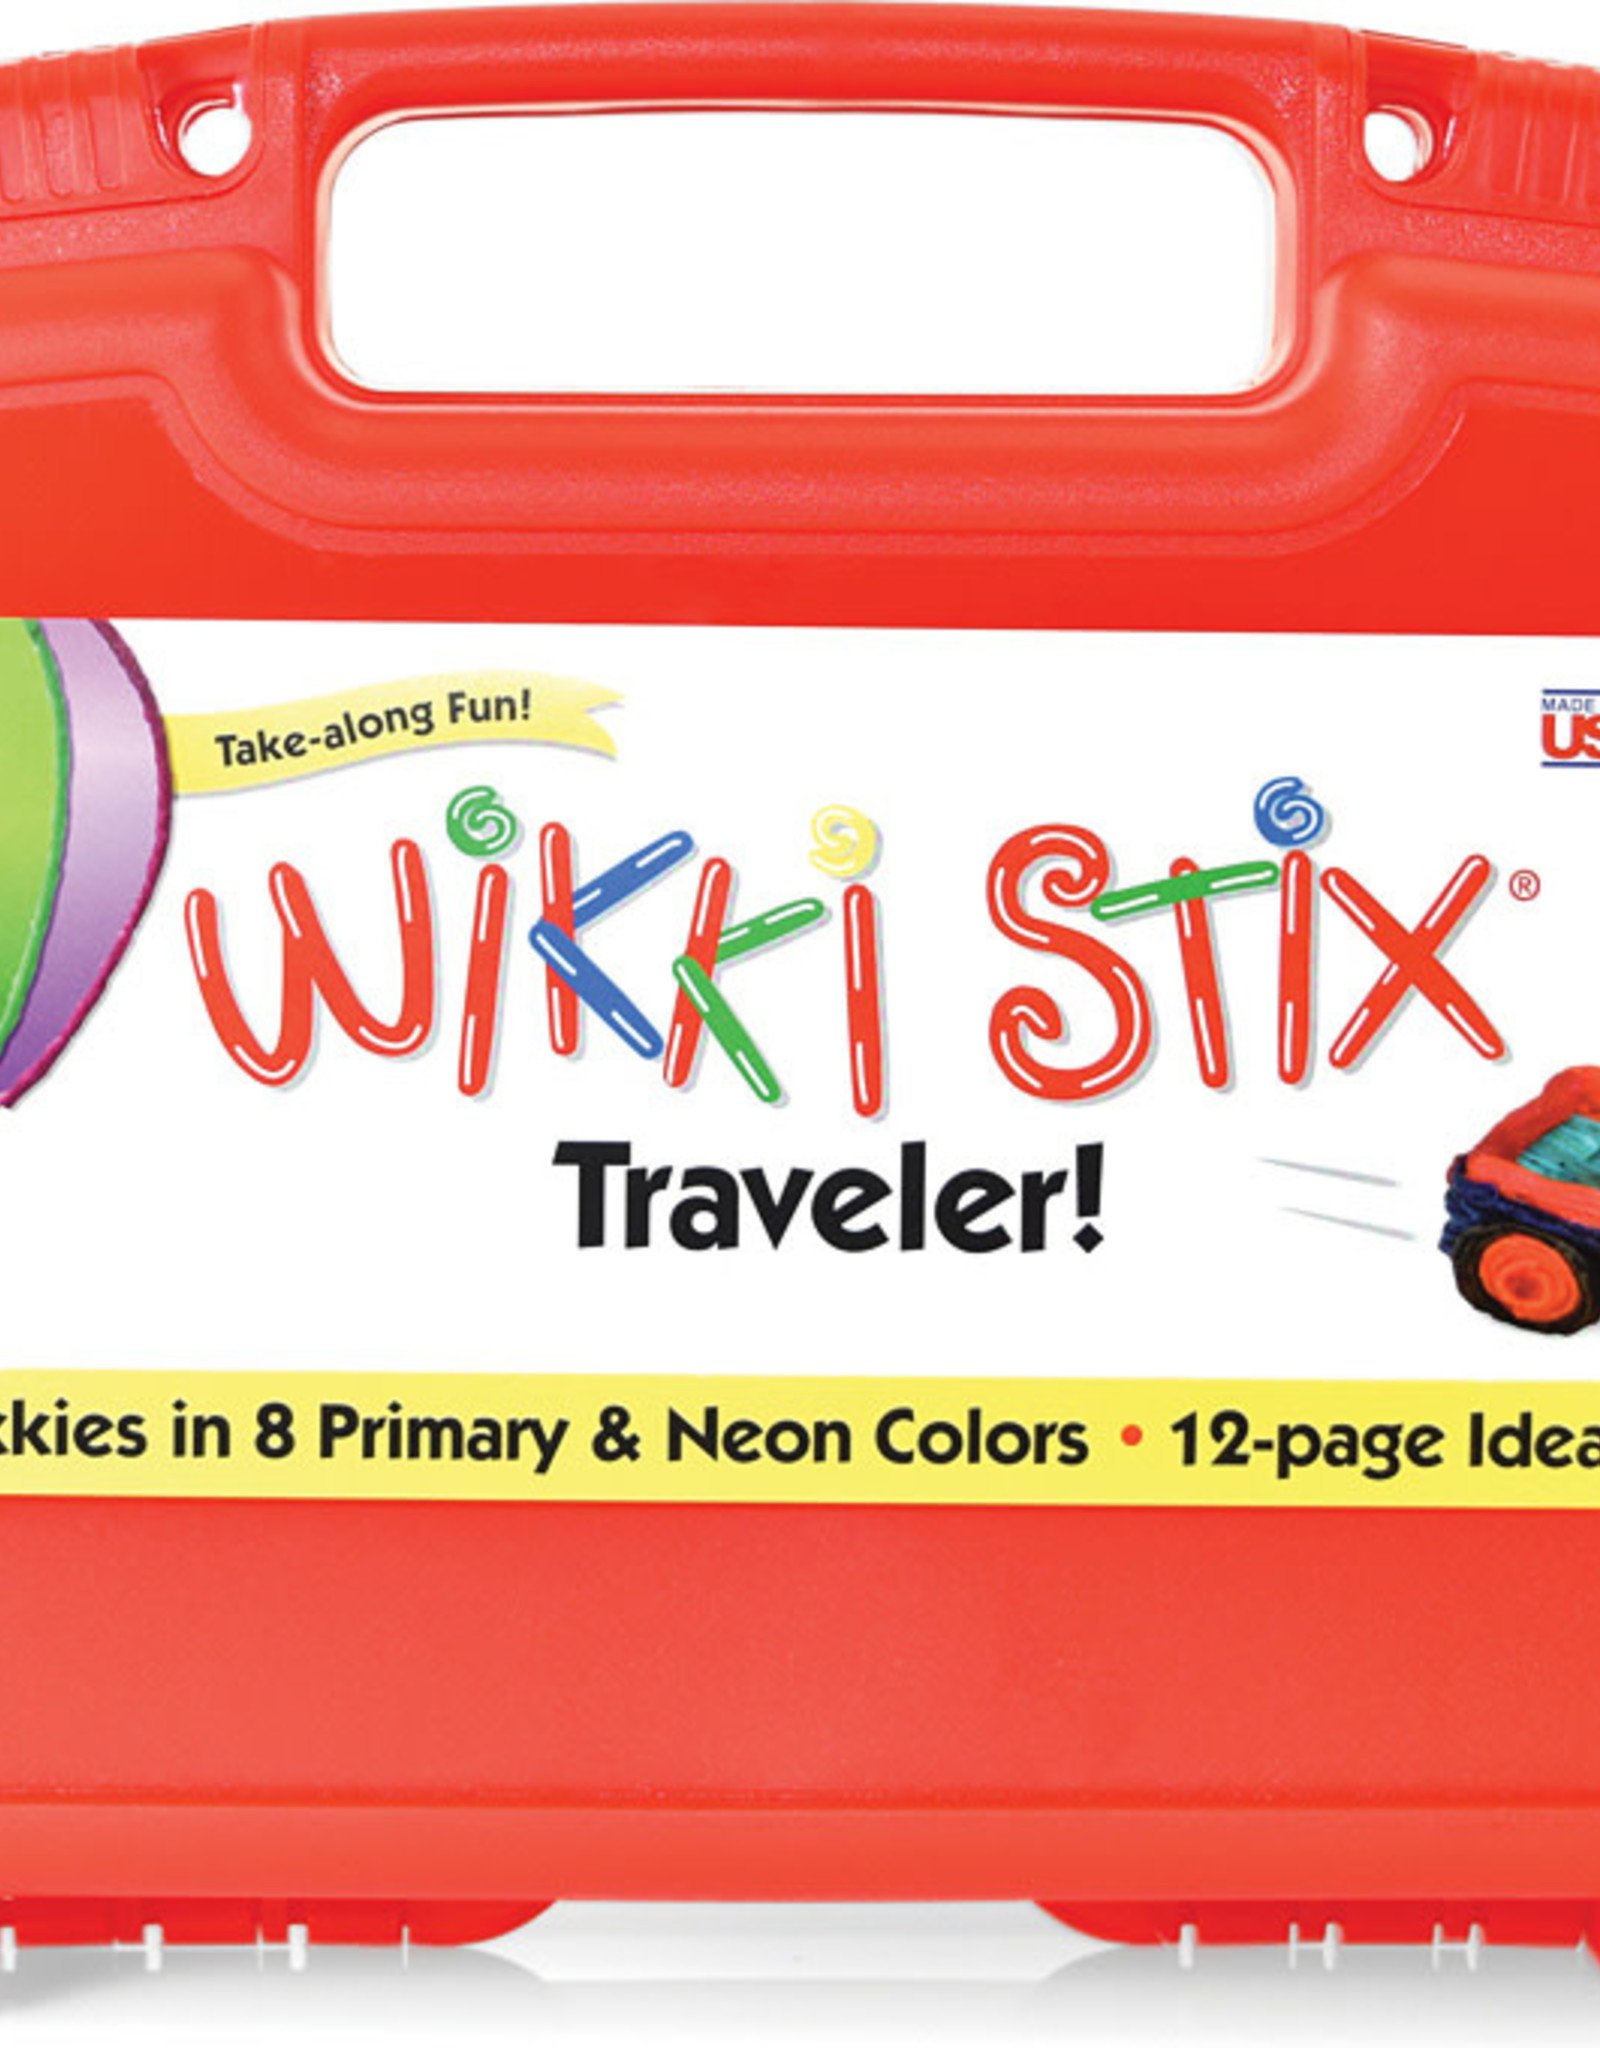 Wikki Stix Traveler Case from Toy Market - Toy Market